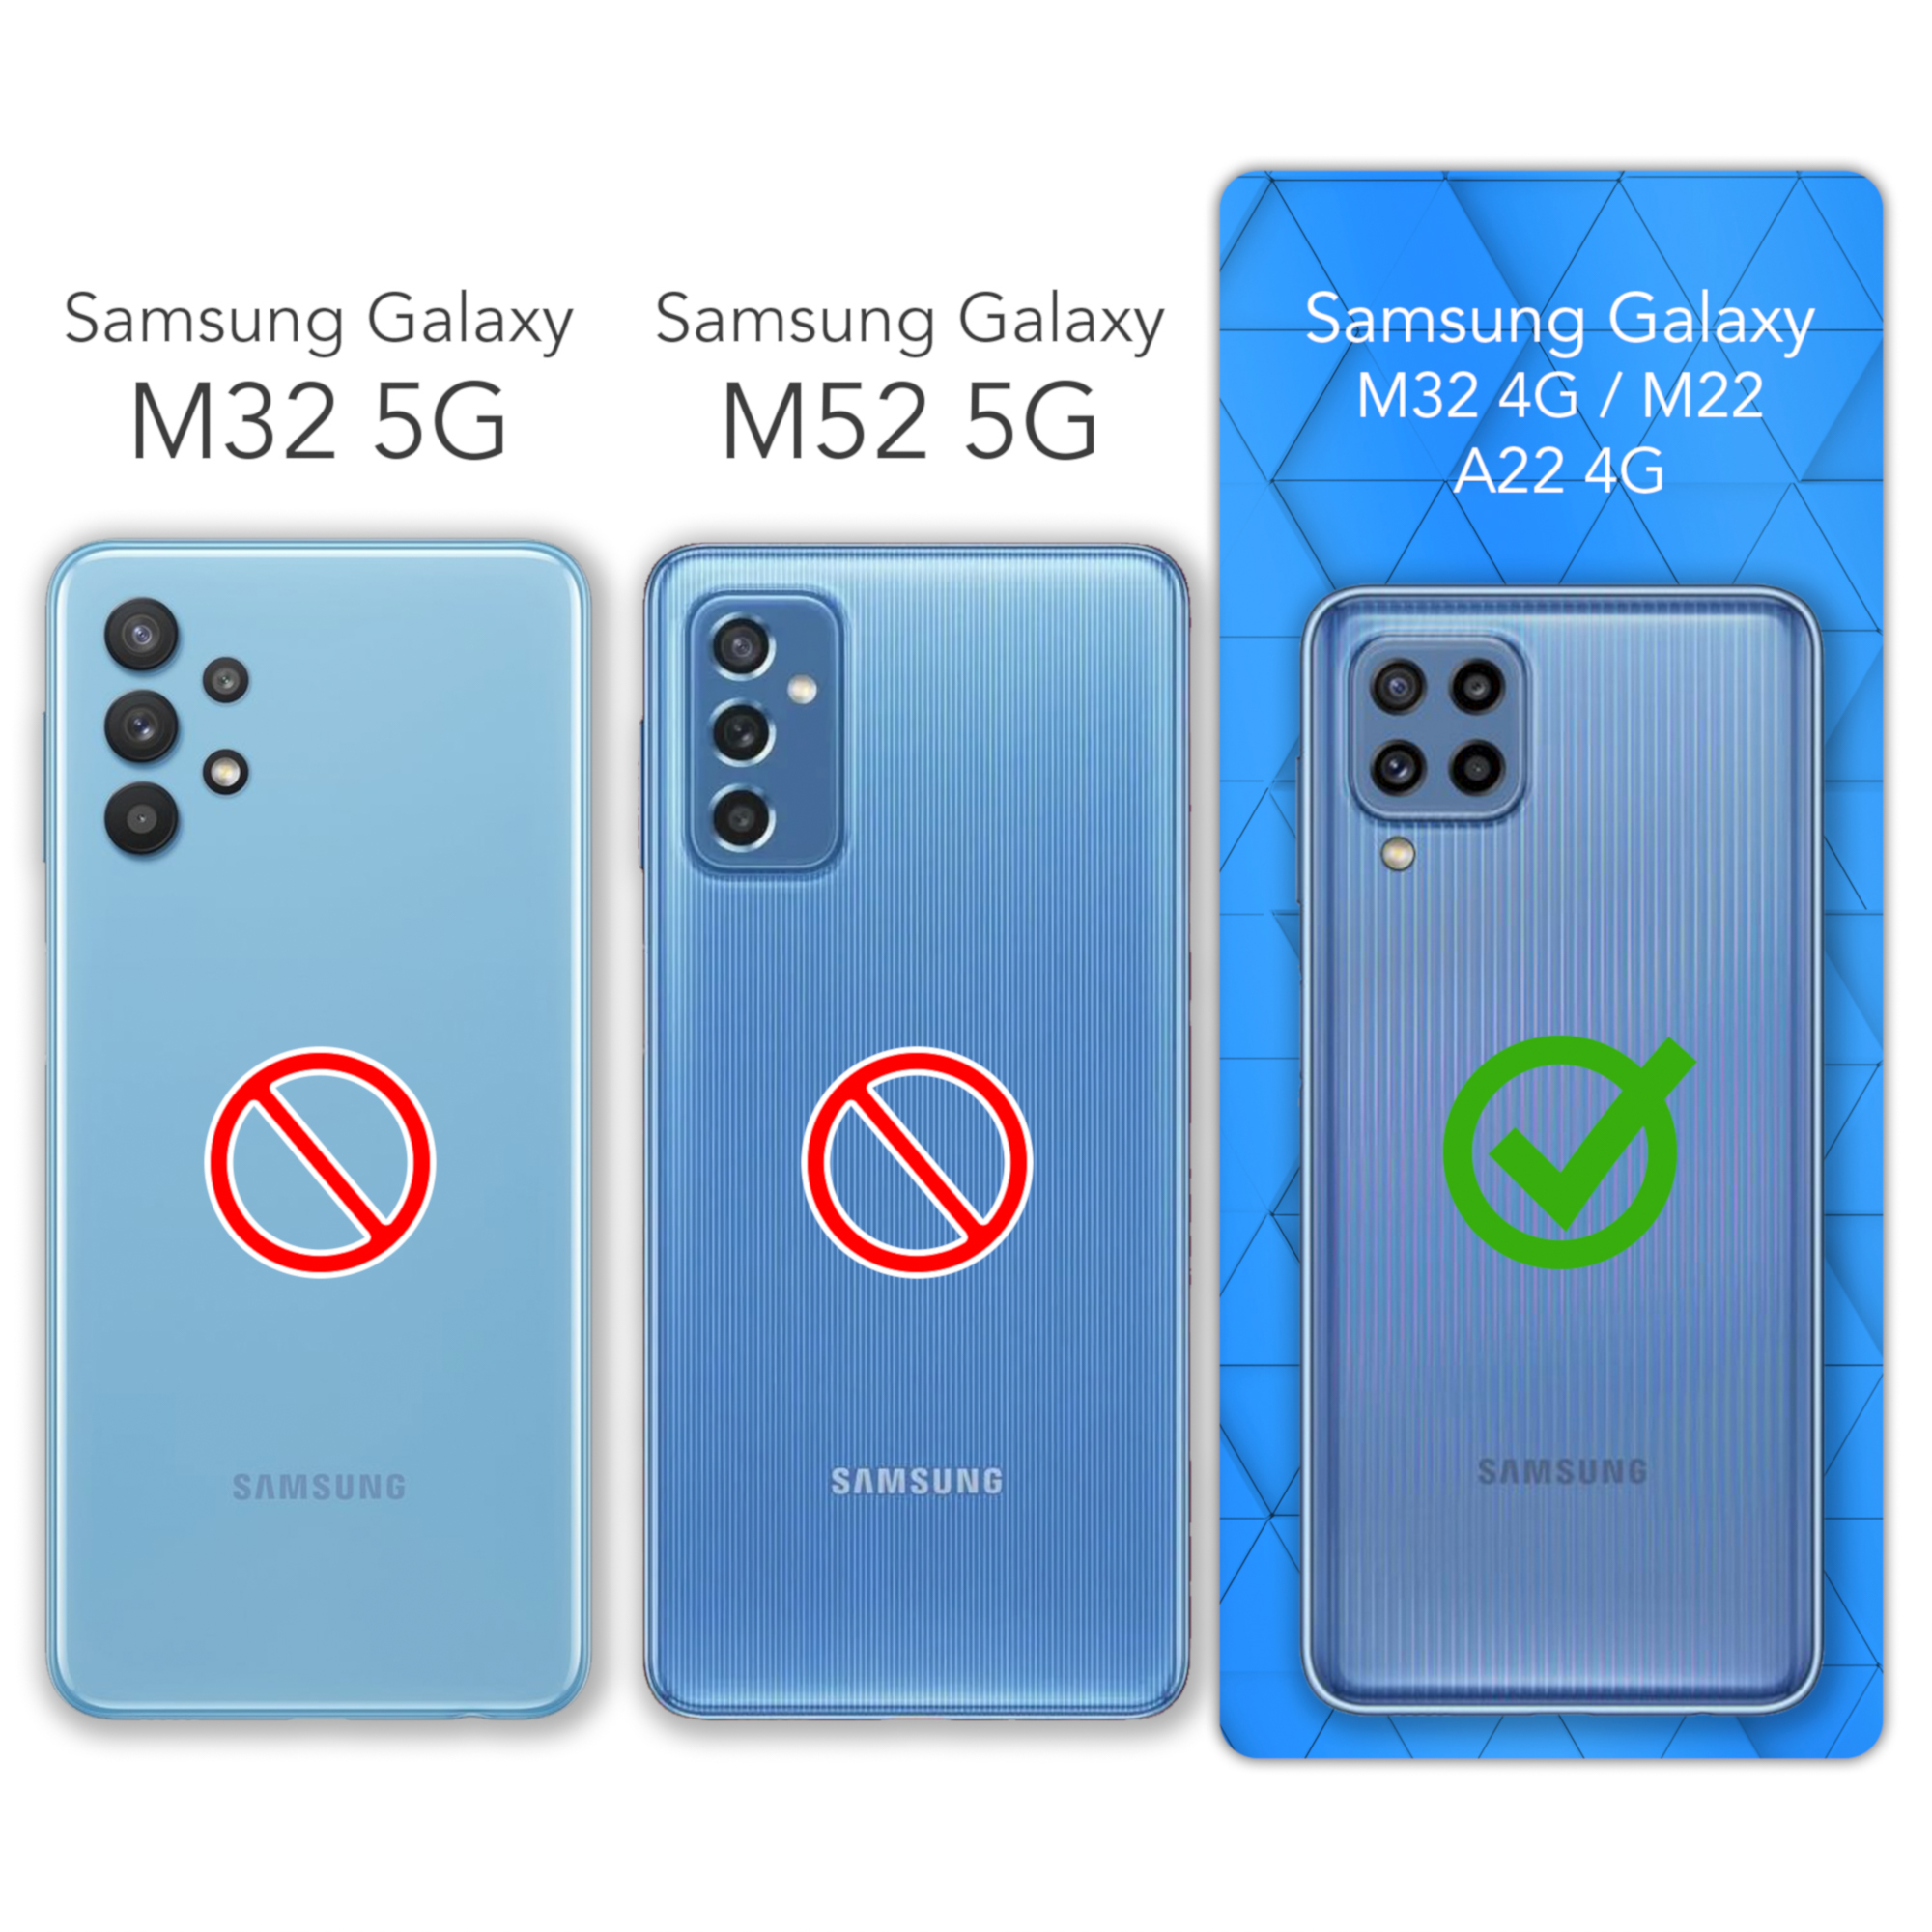 A22 M22 Petrol Galaxy Backcover, M32 Samsung, / EAZY Matt, Handycase Silikon CASE / / TPU Blau 4G,